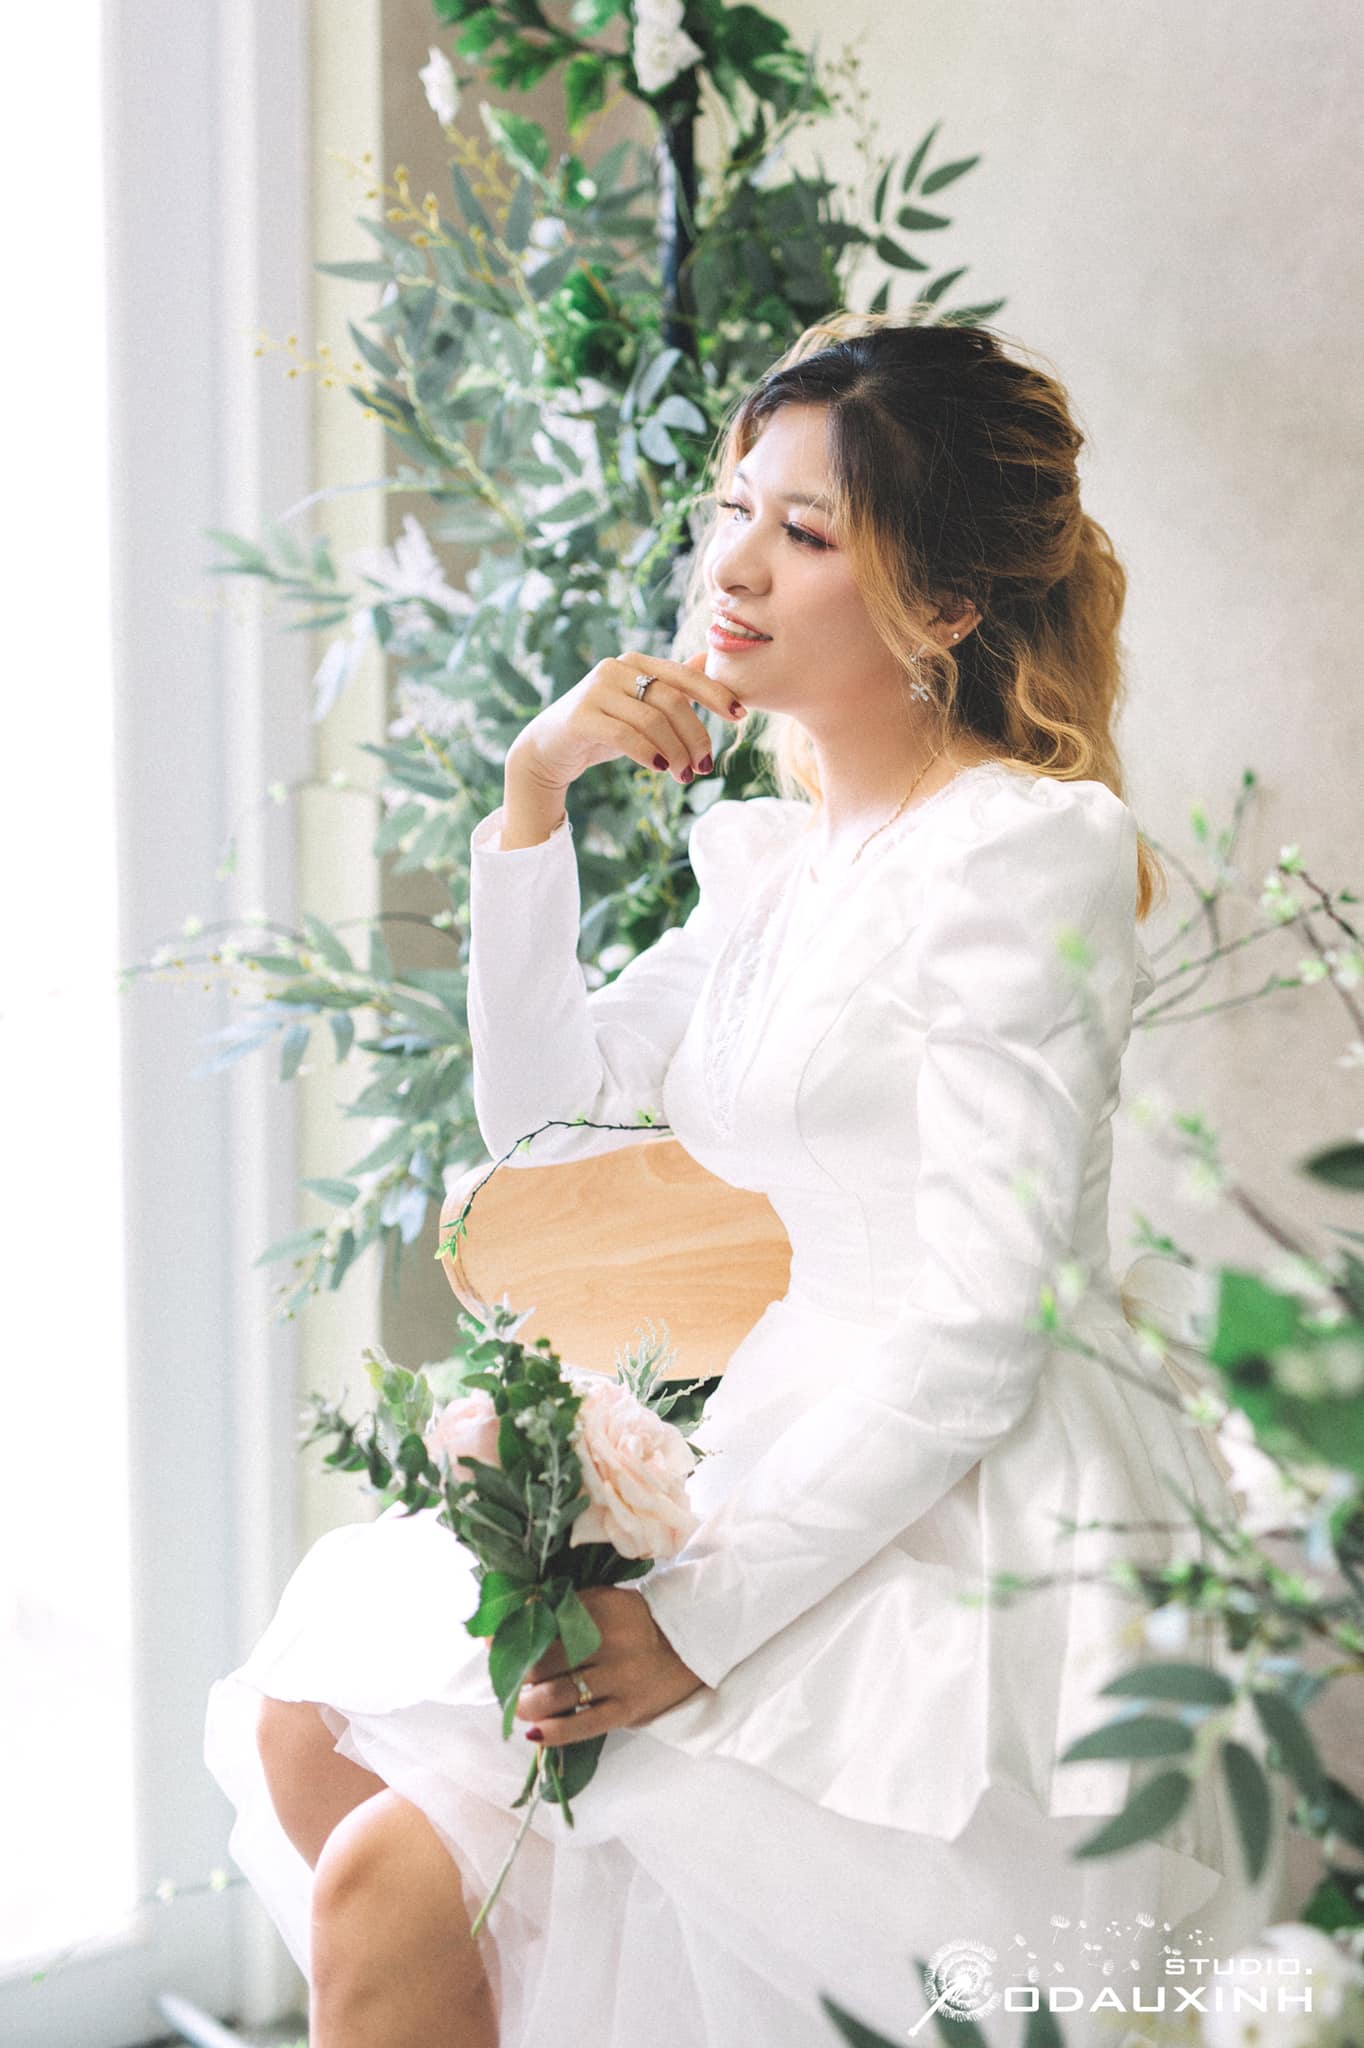 Top 7 tiệm trang điểm cô dâu đẹp nhất tại Cam Ranh, Khánh Hòa -  Cam Thanh Thanh make up (Studio cô dâu xinh NT)